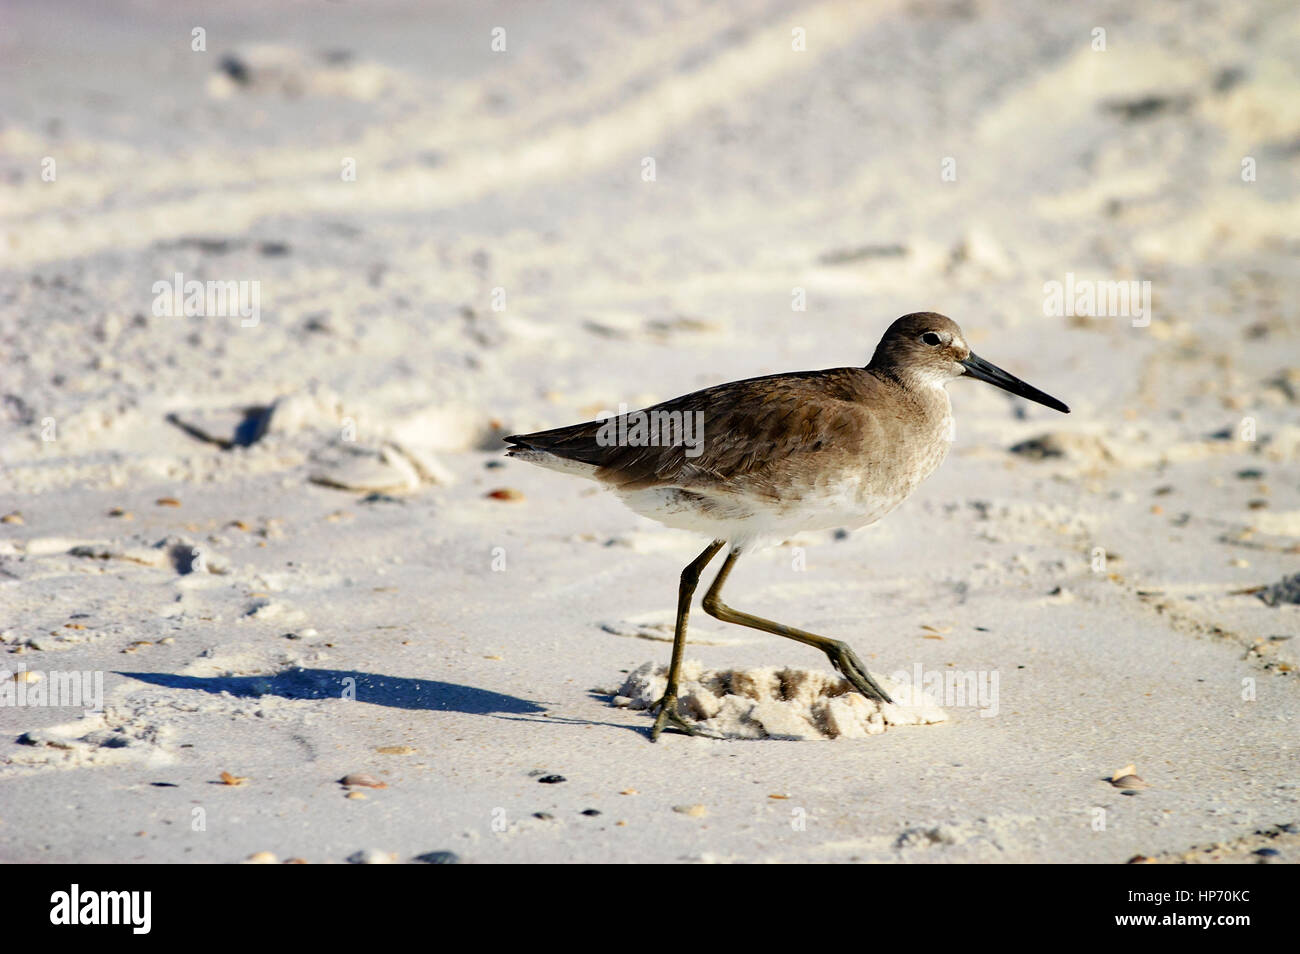 Un sable piper marcher sur une plage de sable blanc. Panama City Beach, la Côte du Golfe, en Floride. Banque D'Images